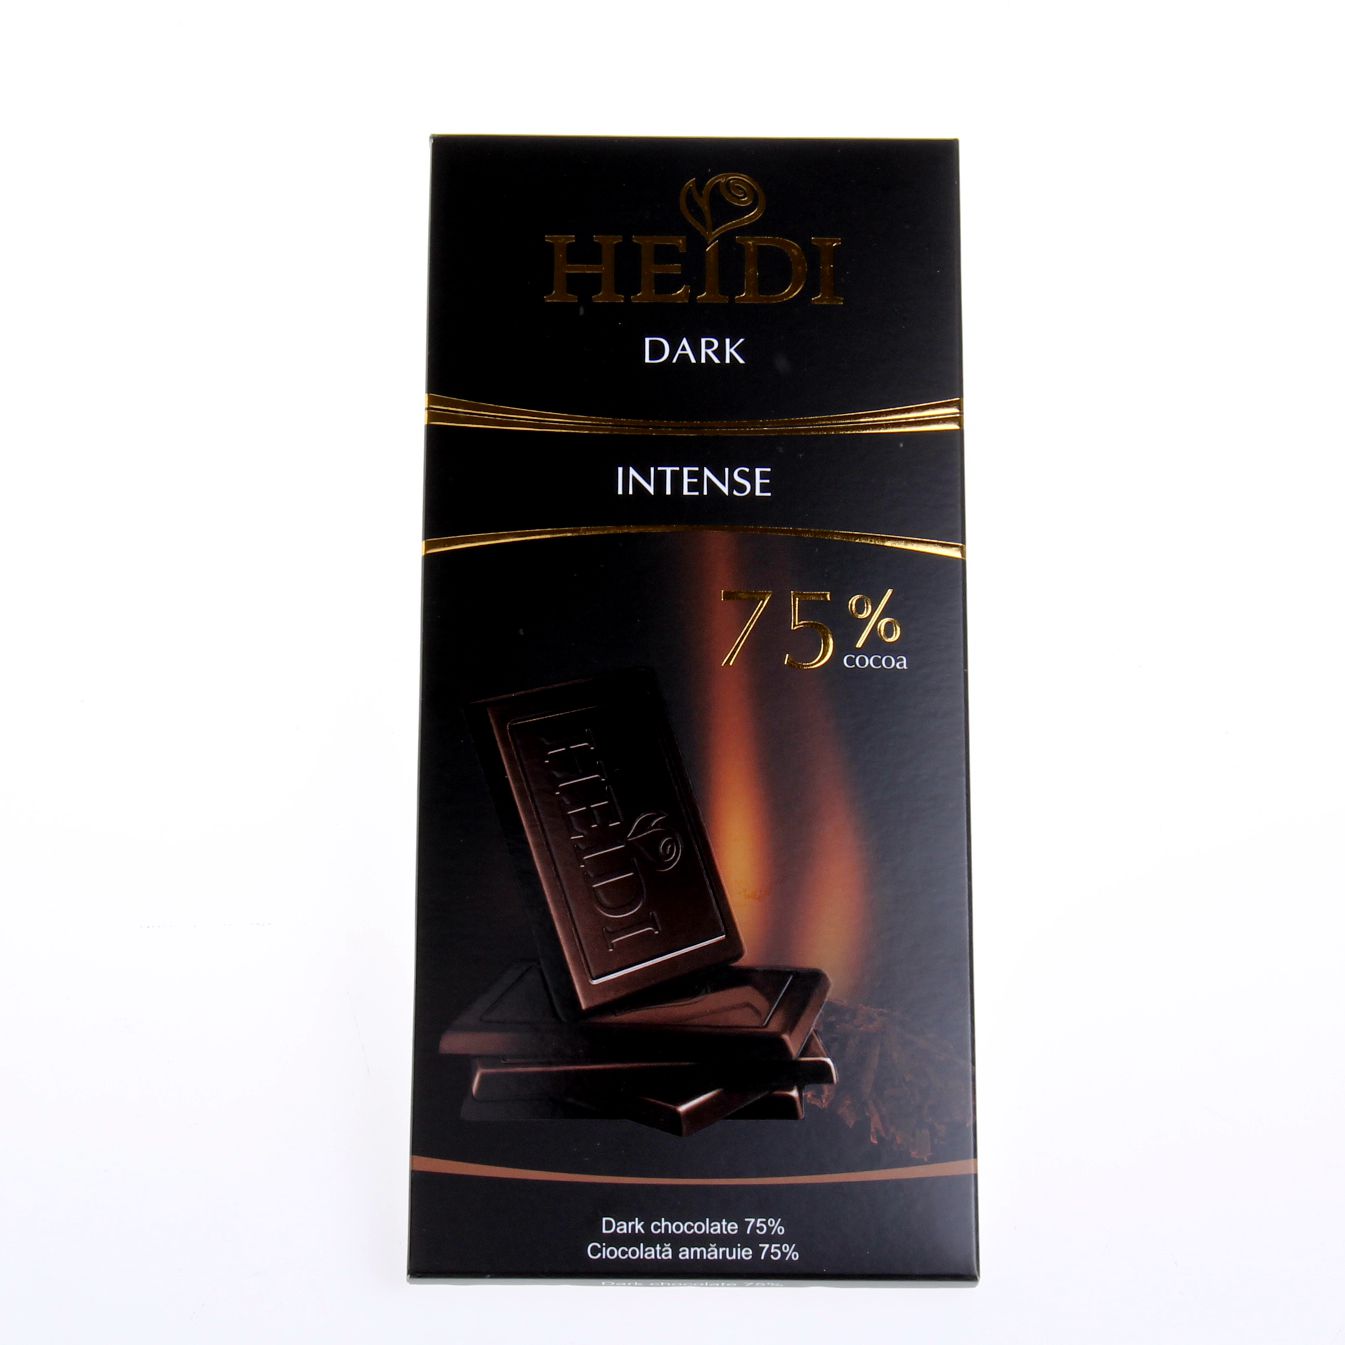 罗马尼亚进口 HEIDI瑞士赫蒂75%特浓纯黑巧克力80g